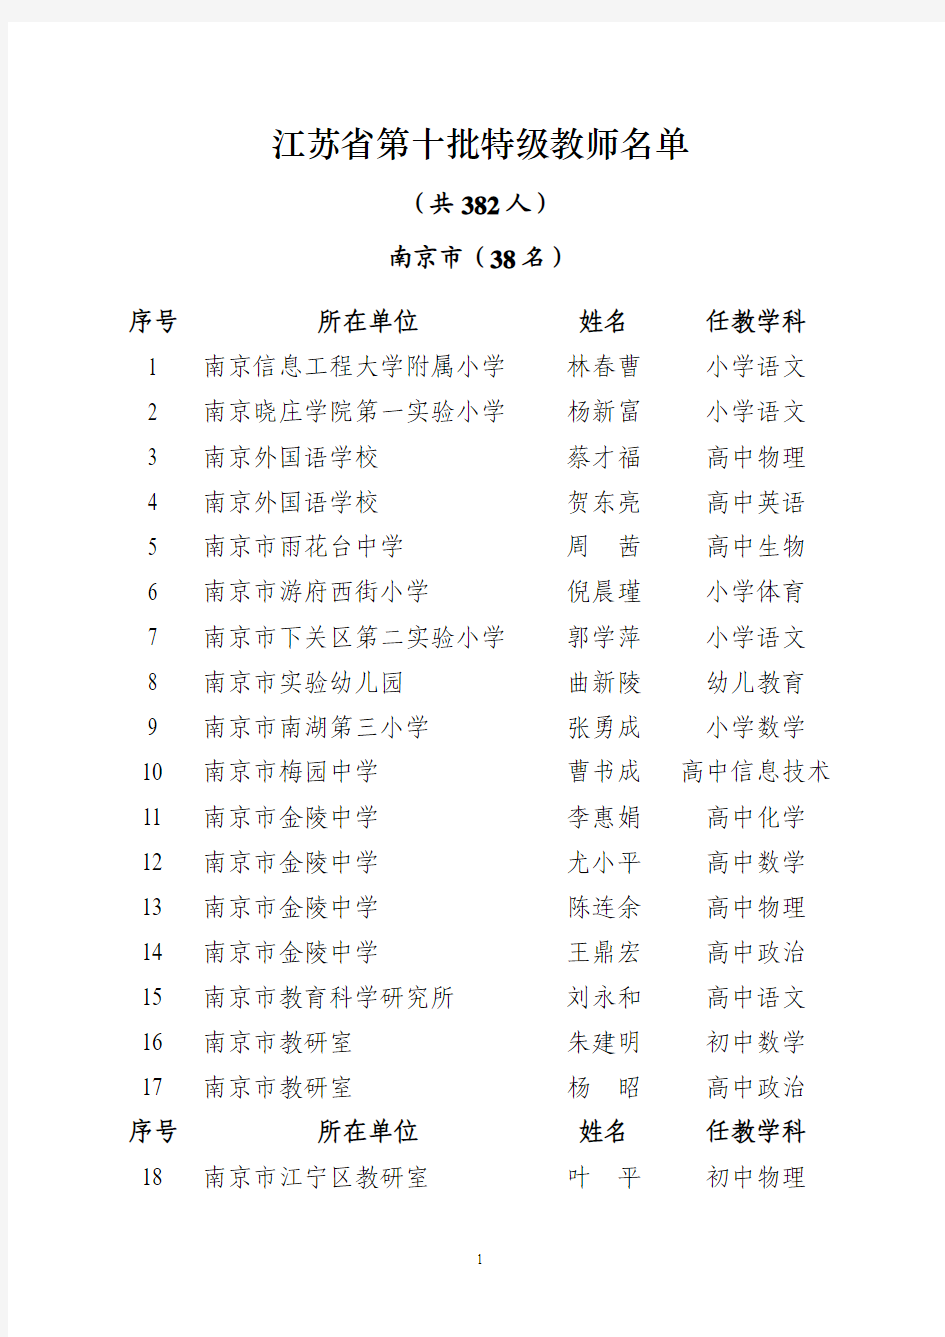 江苏省第十批特级教师名单(2008年)